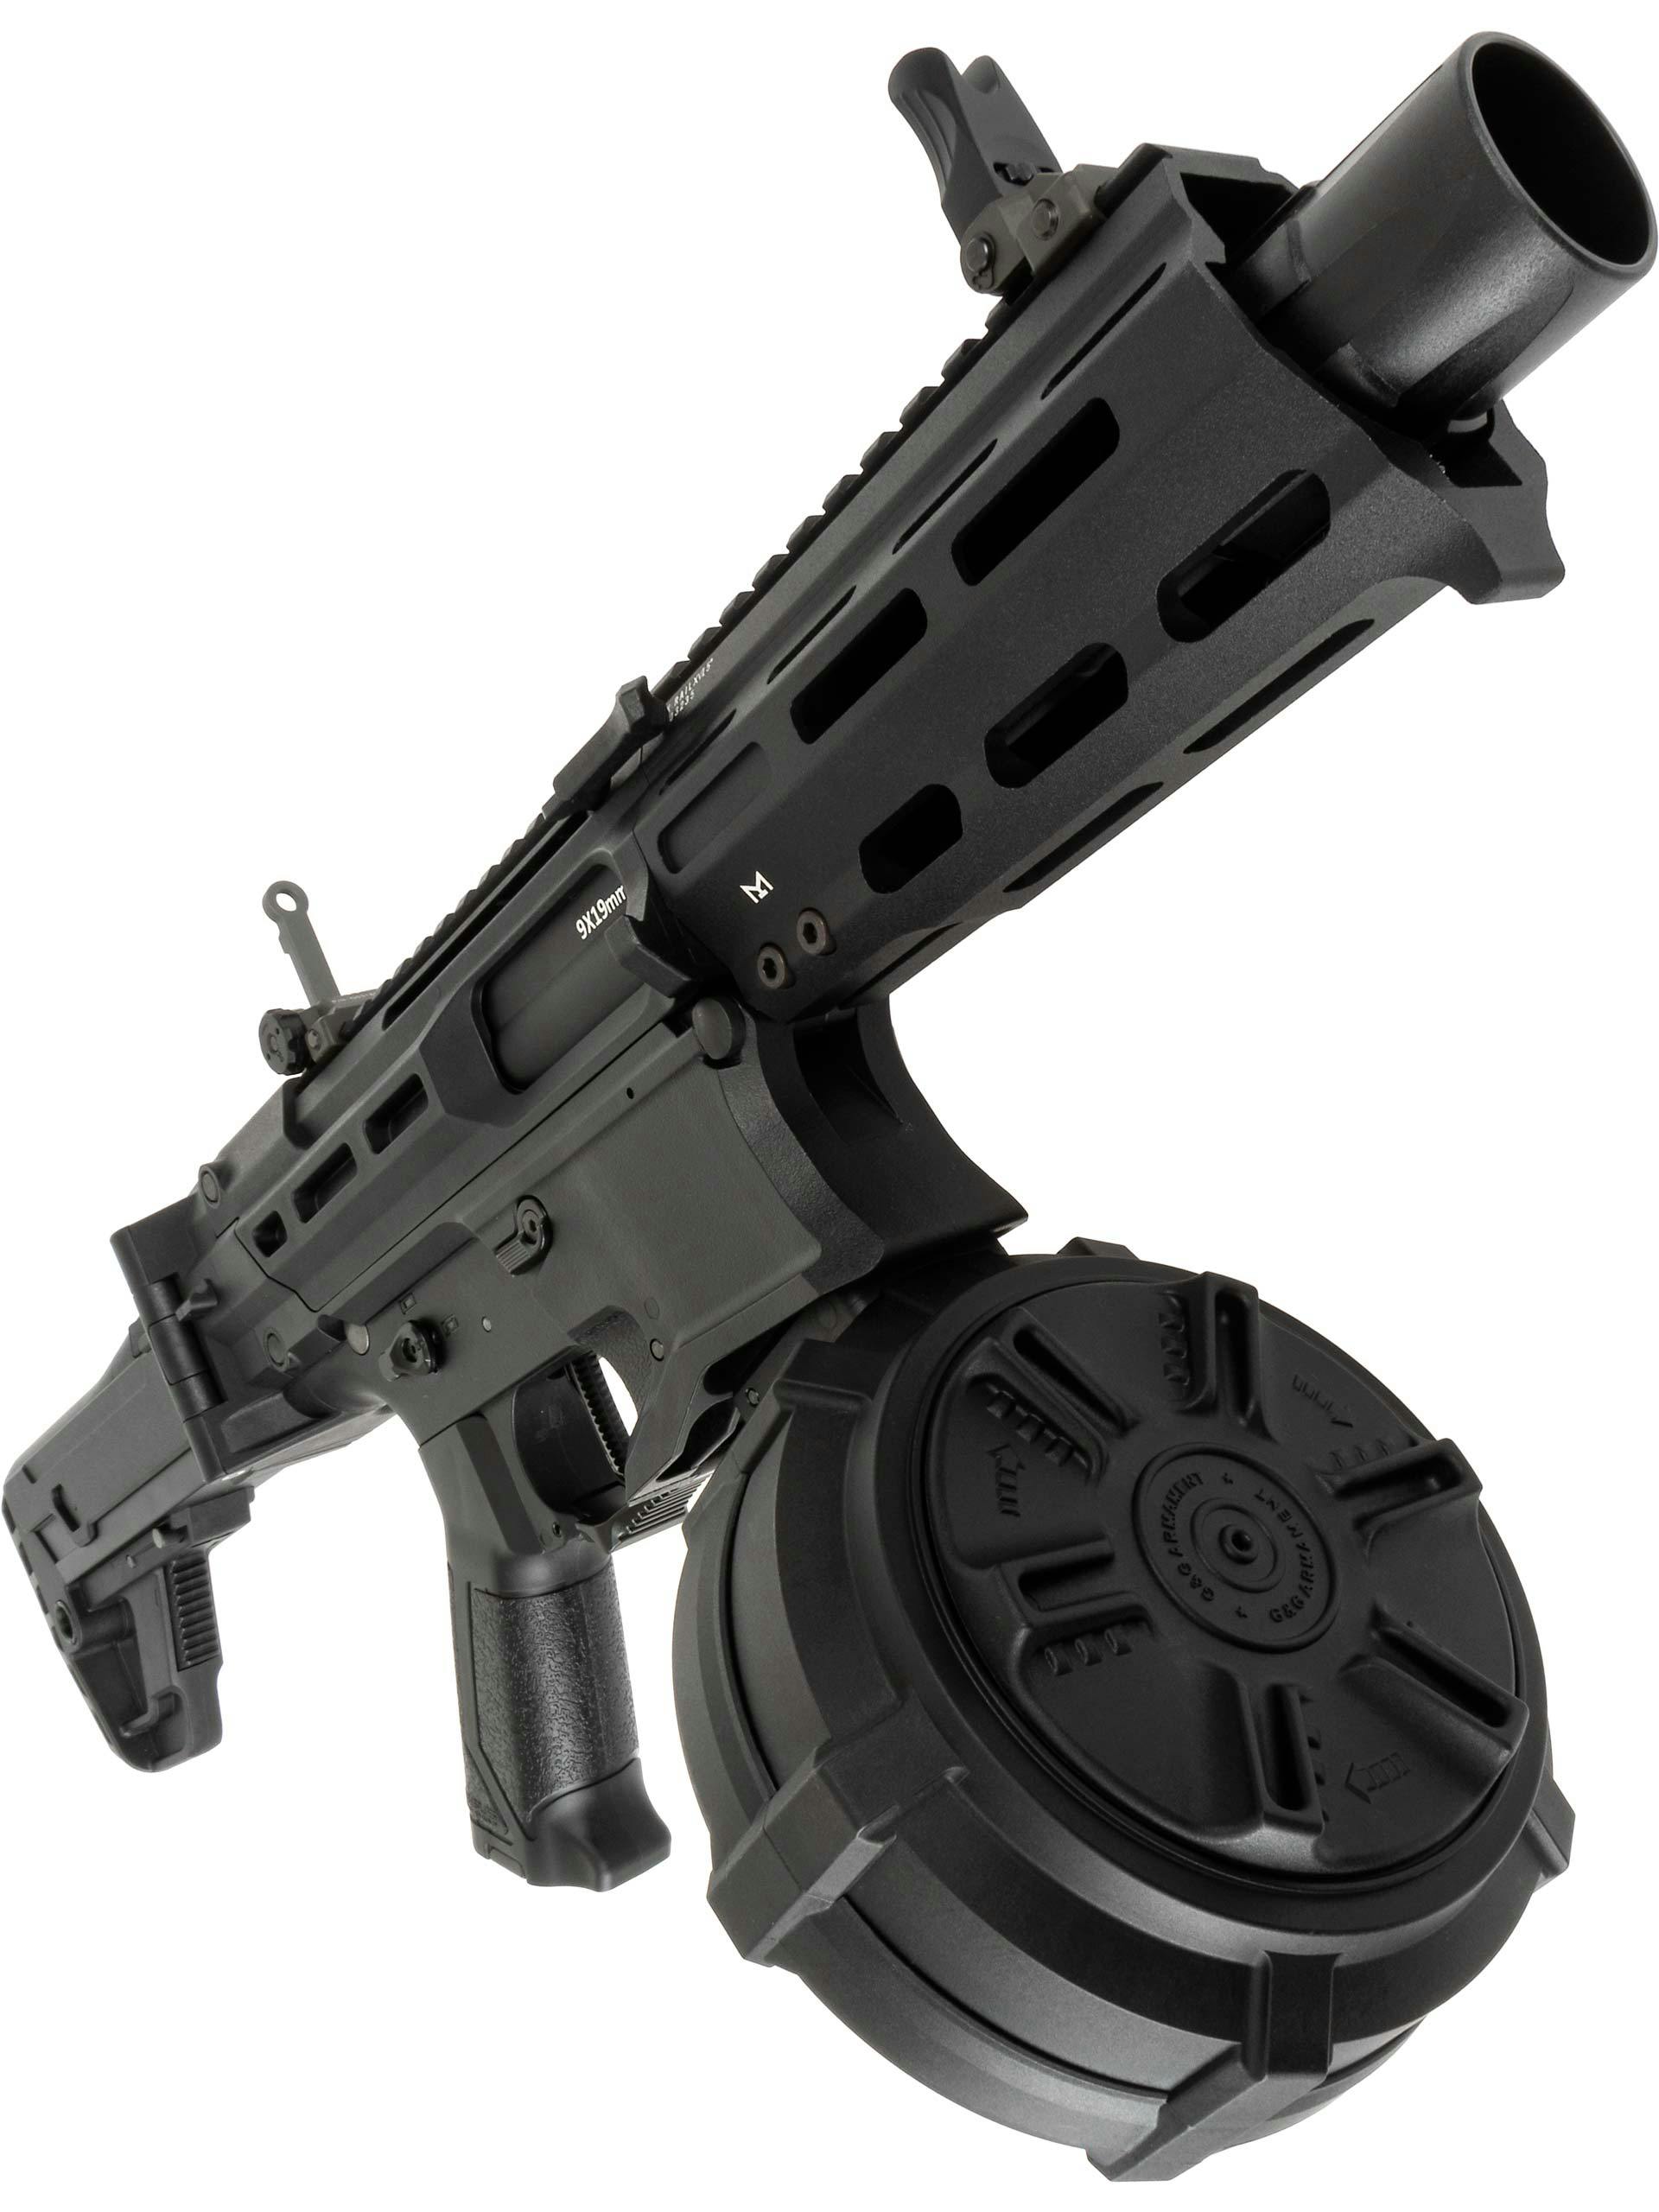 G&G Armament MXC 9 Enhanced Airsoft Gun